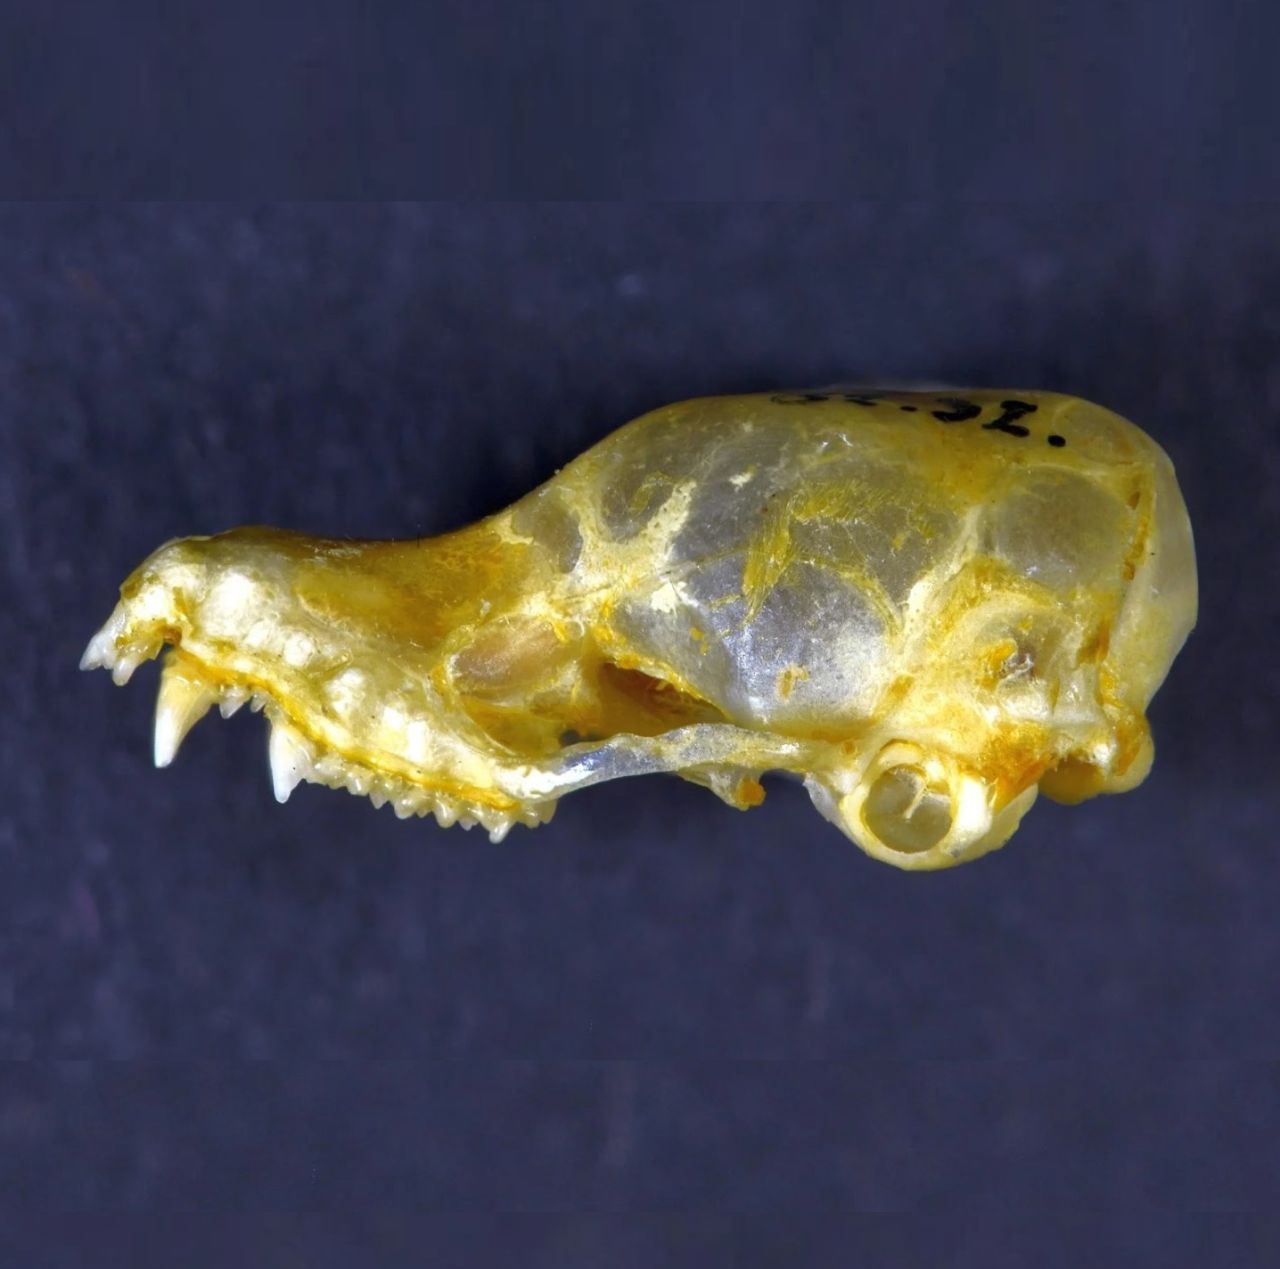 Die neu entdeckte Mausohr-Fledermaus-Art, mit ungewöhnlich fleischigen Daumen, könnte bei ihrer Entdeckung bereits ausgestorben sein. Bisher konnten in Kambodscha nur Knochen gefunden werden. Aktuell suchen Forschende nach noch lebenden Exemplaren.